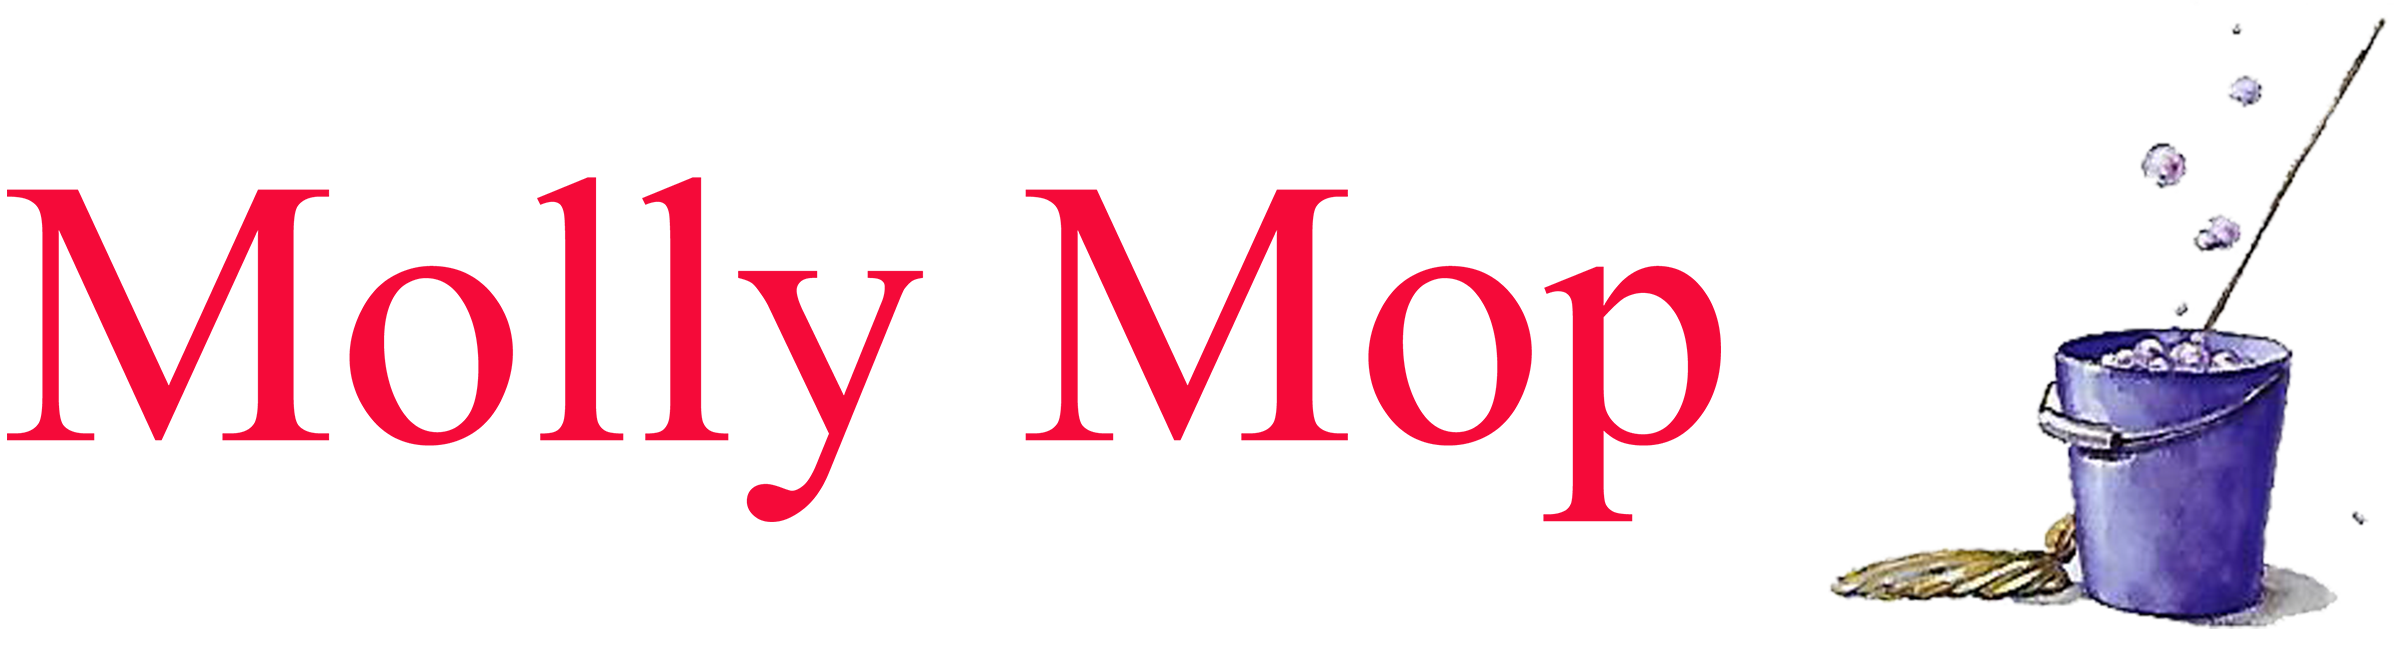 Molly Mop